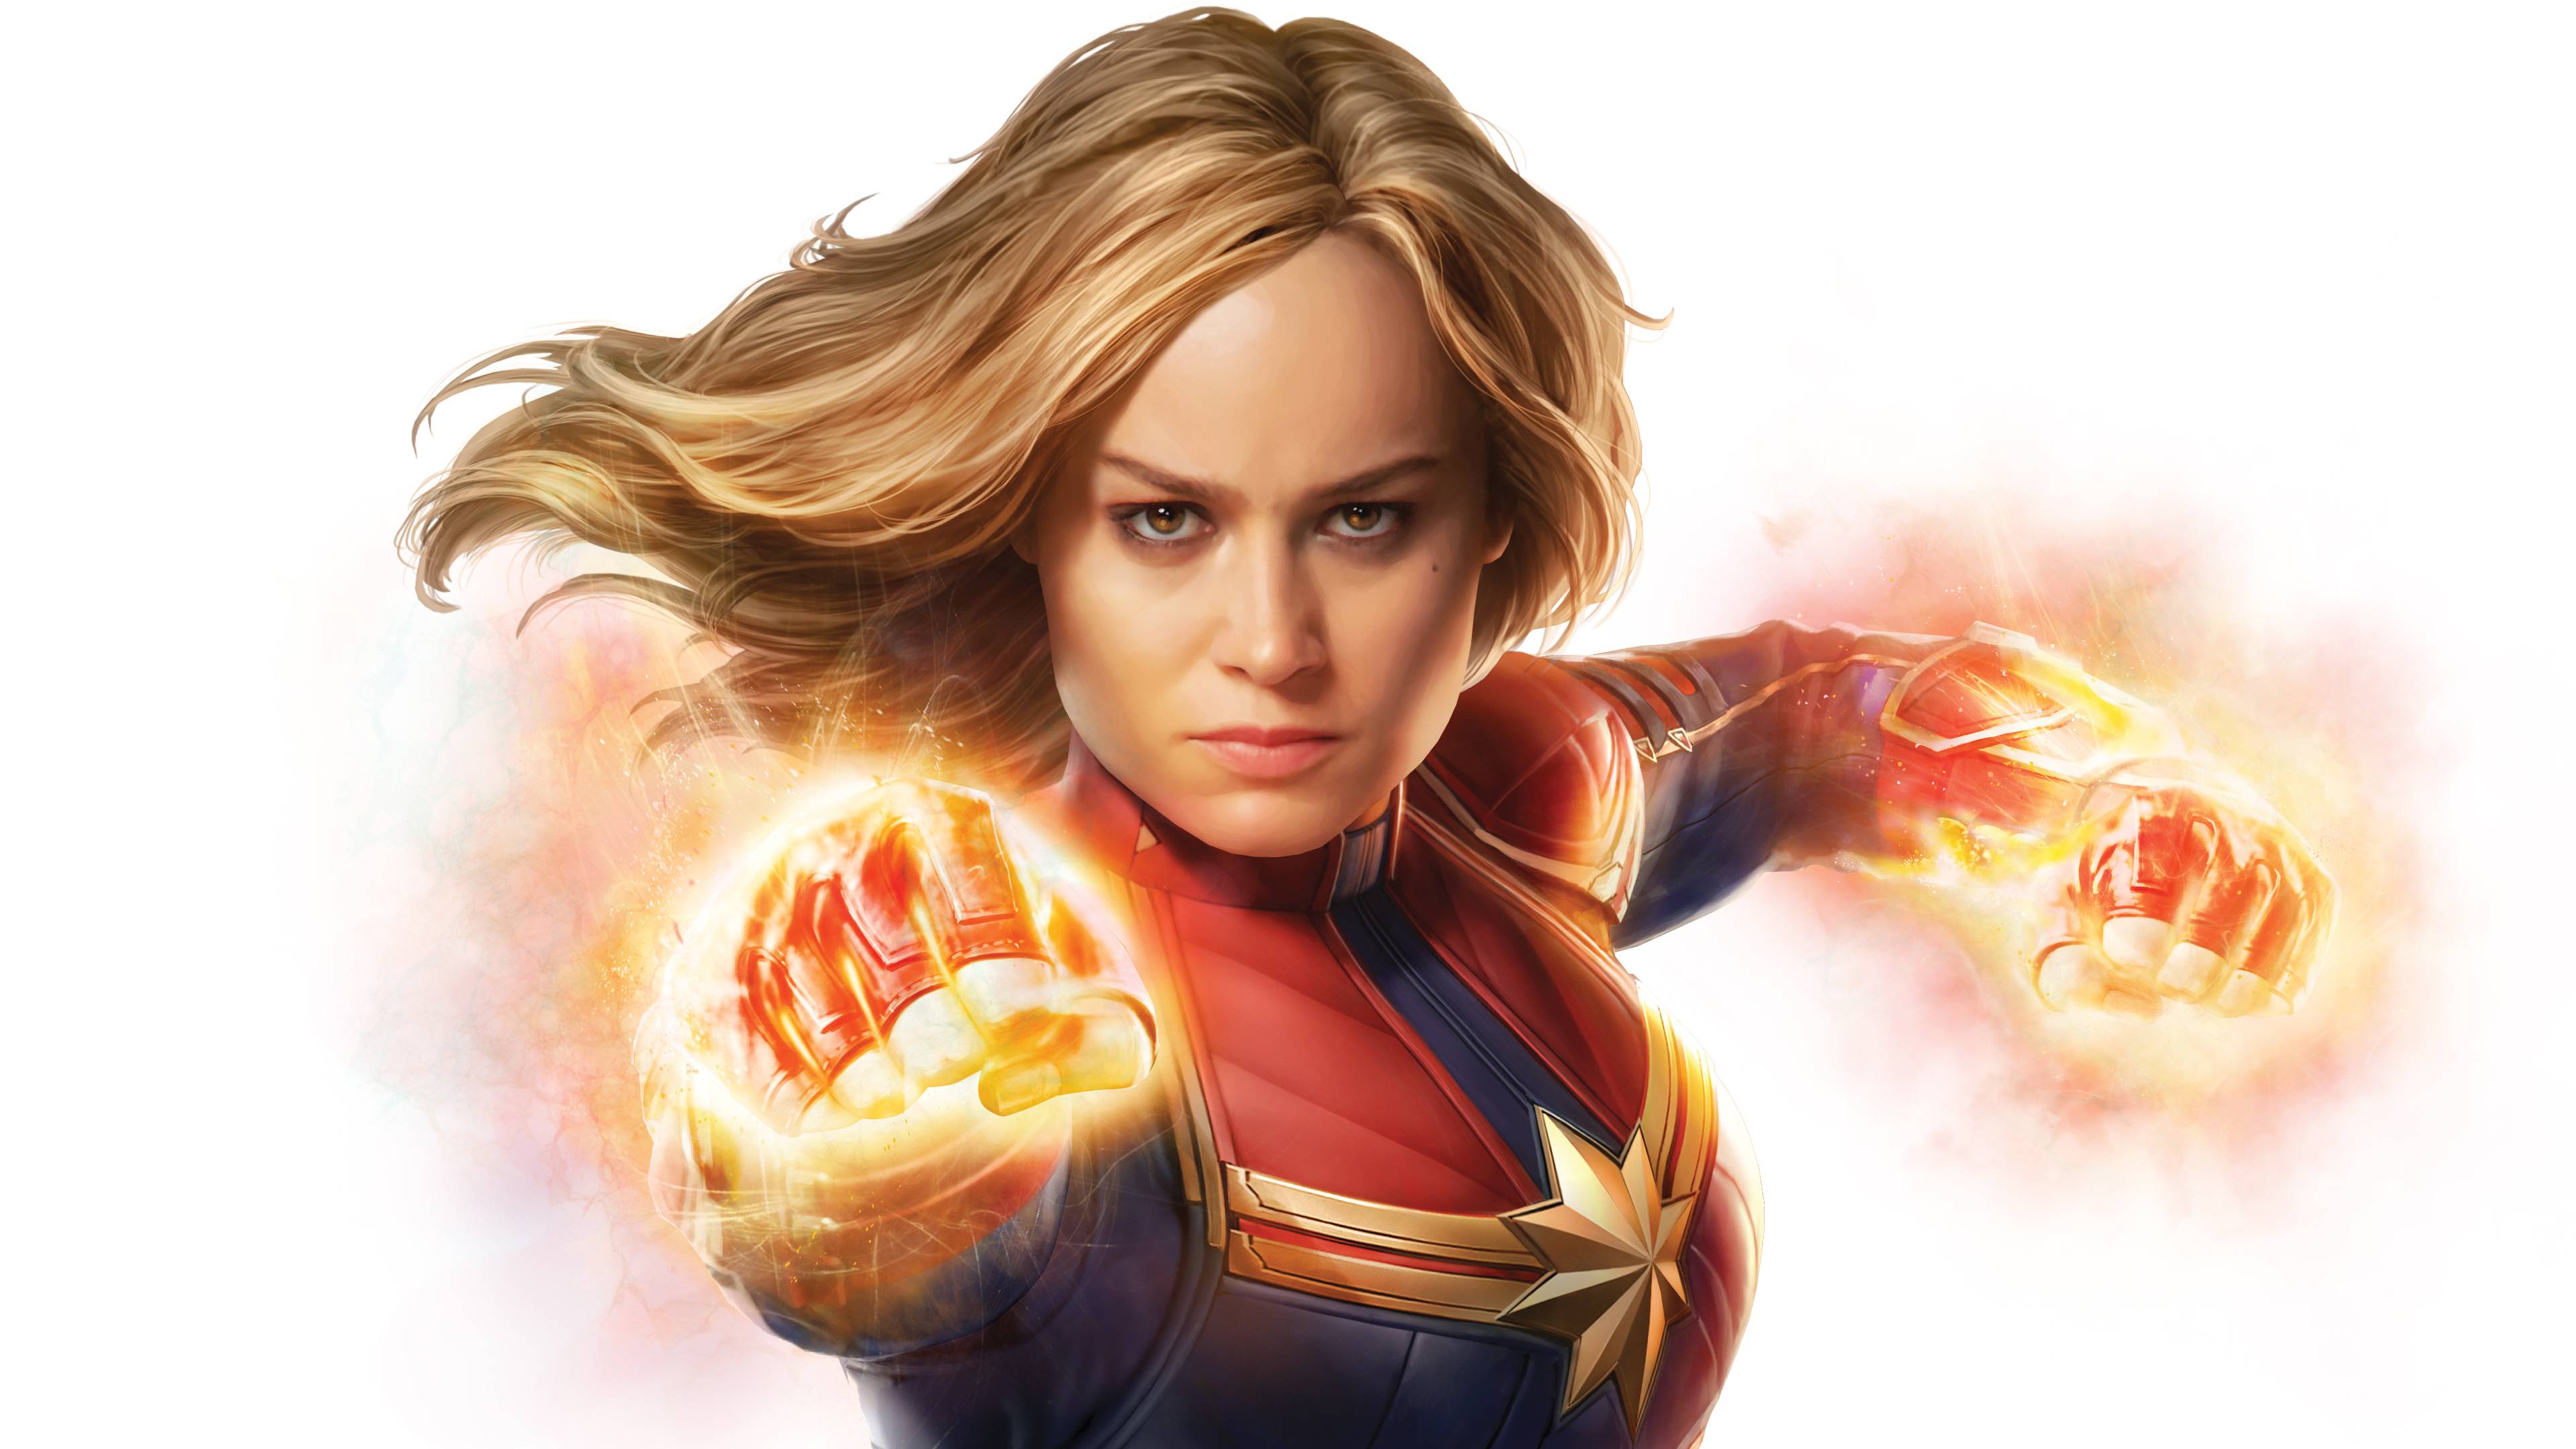 Brie Larson as Captain Marvel 4K Wallpaper